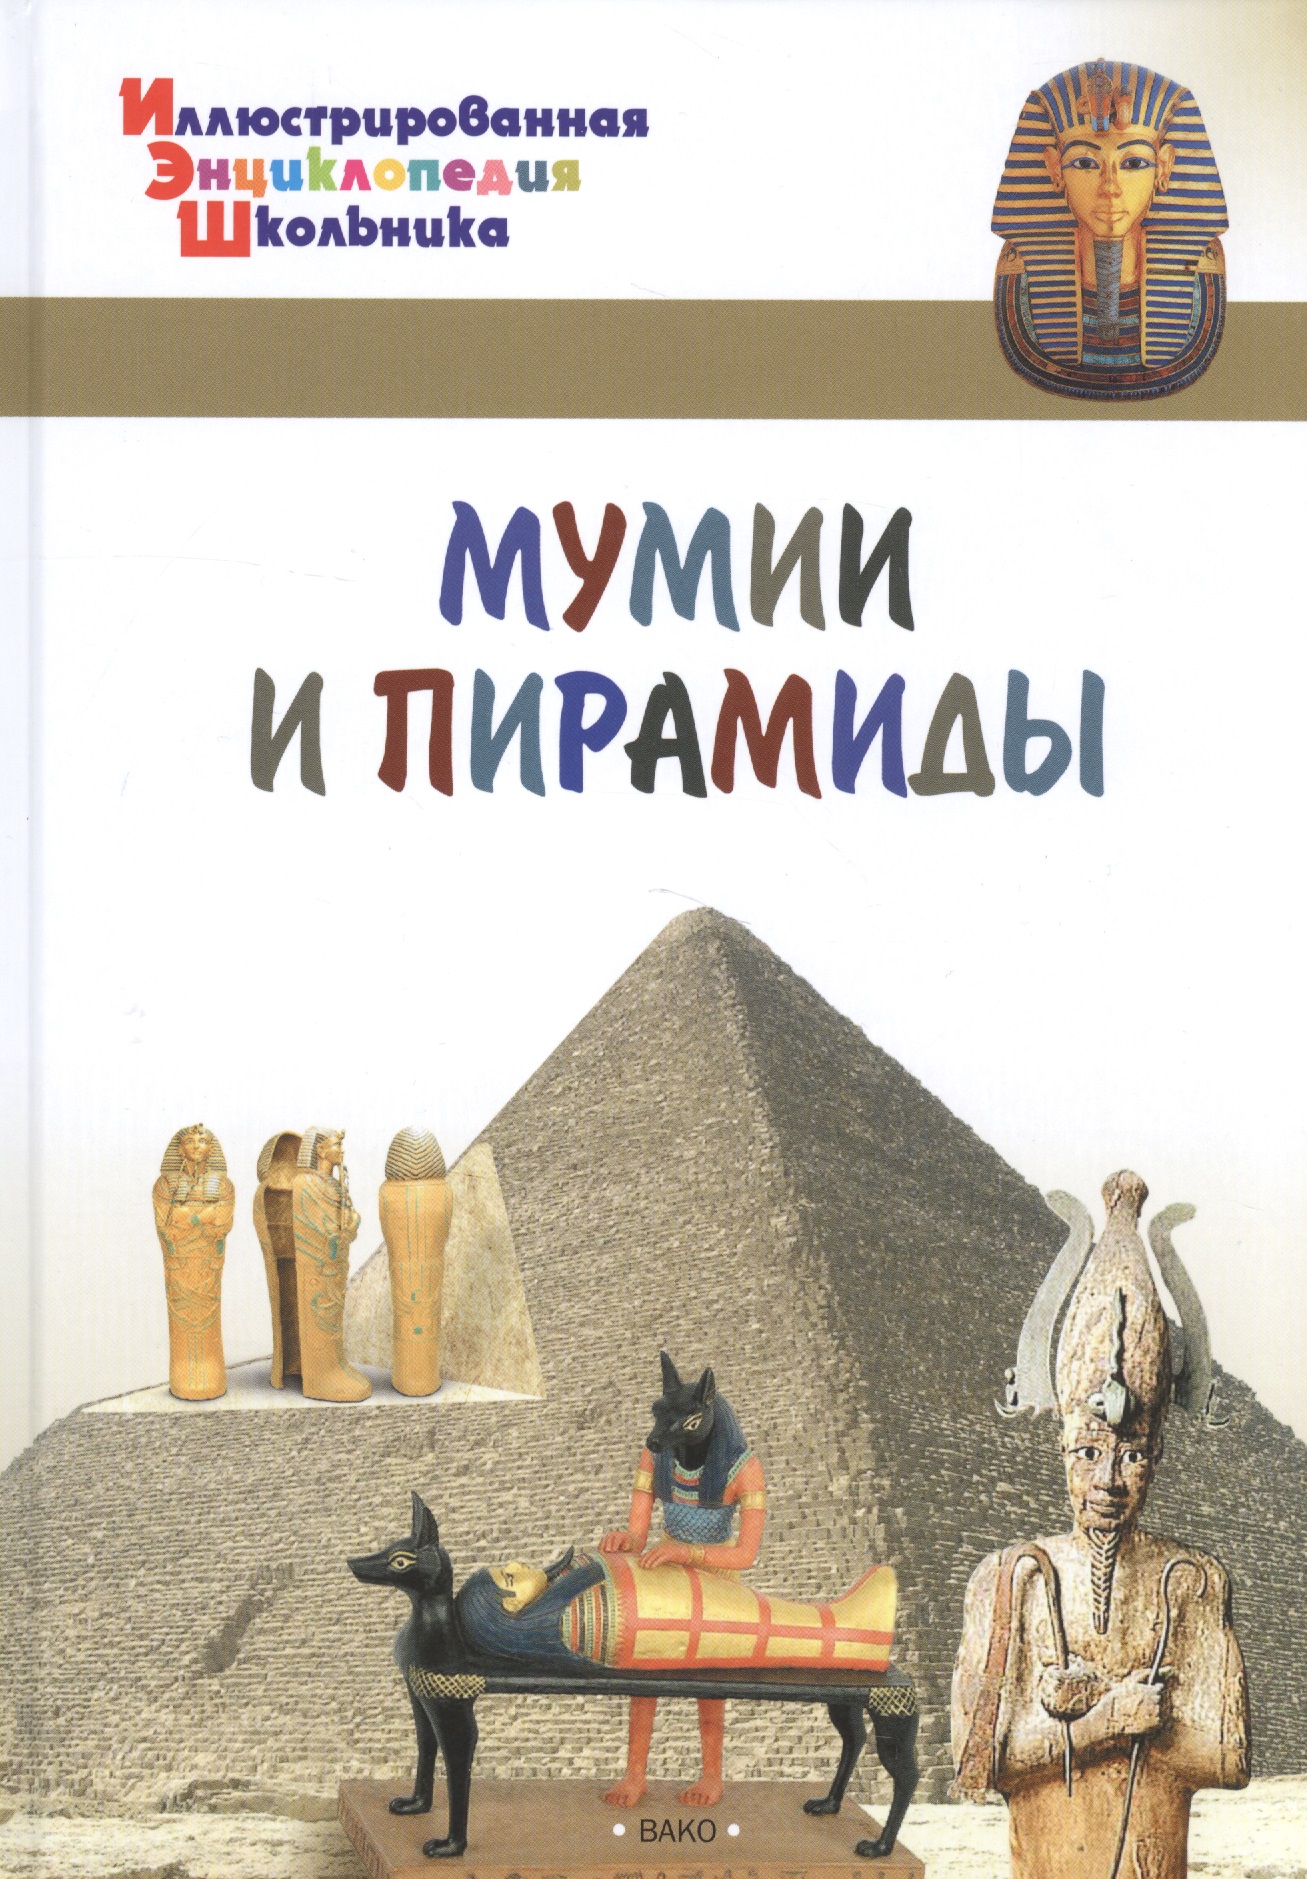 Орехов А.А. Мумии и пирамиды теплин сэм мумии и пирамиды